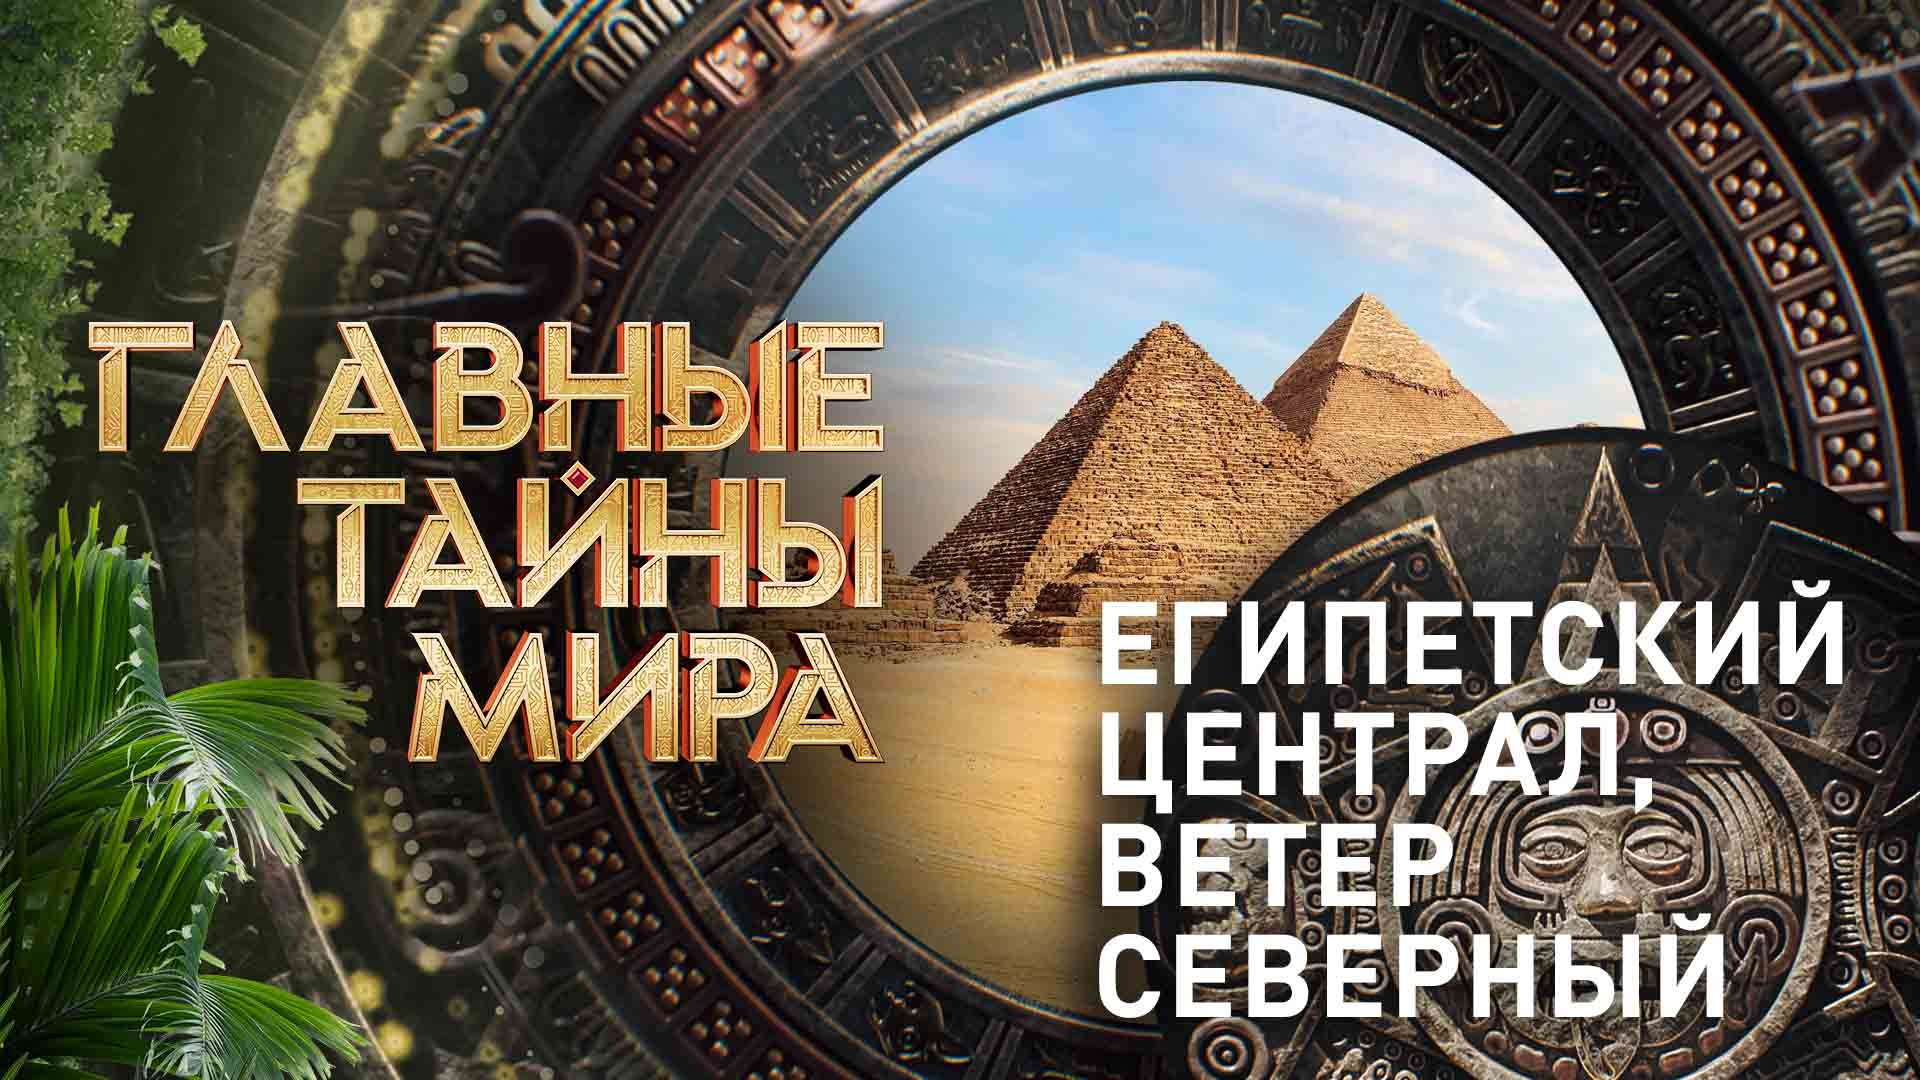 Главные тайны мира — Египетский централ, ветер северный  (24.11.2023)